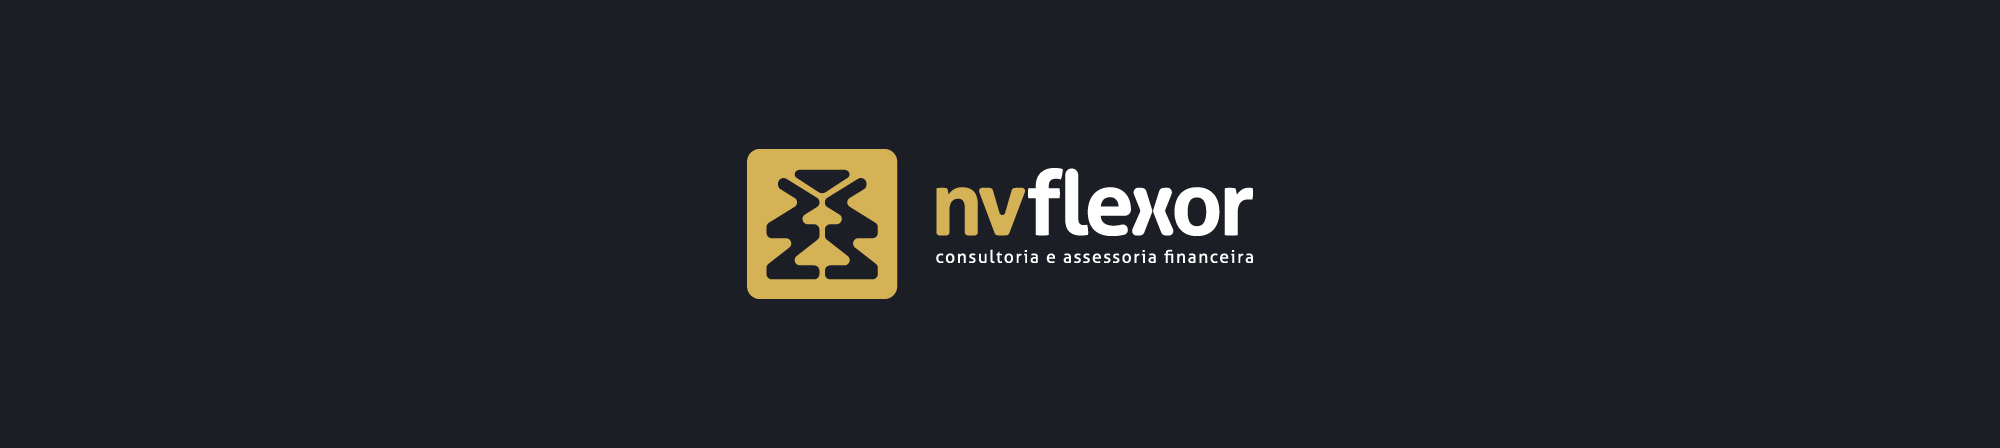 NV Flexor – Site